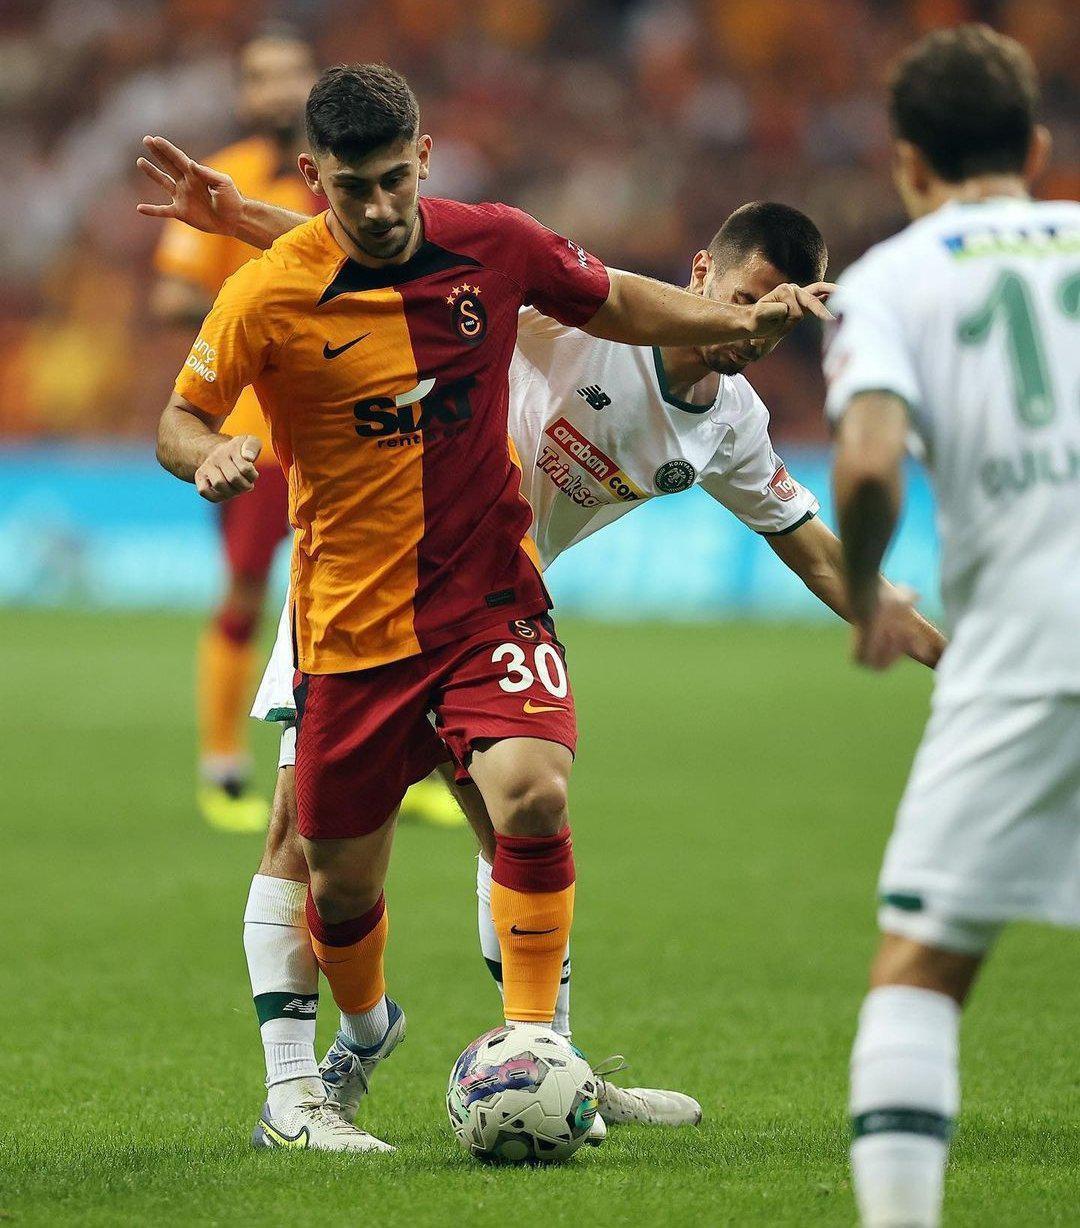 Yusuf Demir, A Milli Takımda ve Galatasarayda yerli statüsünde oynayabilir mi